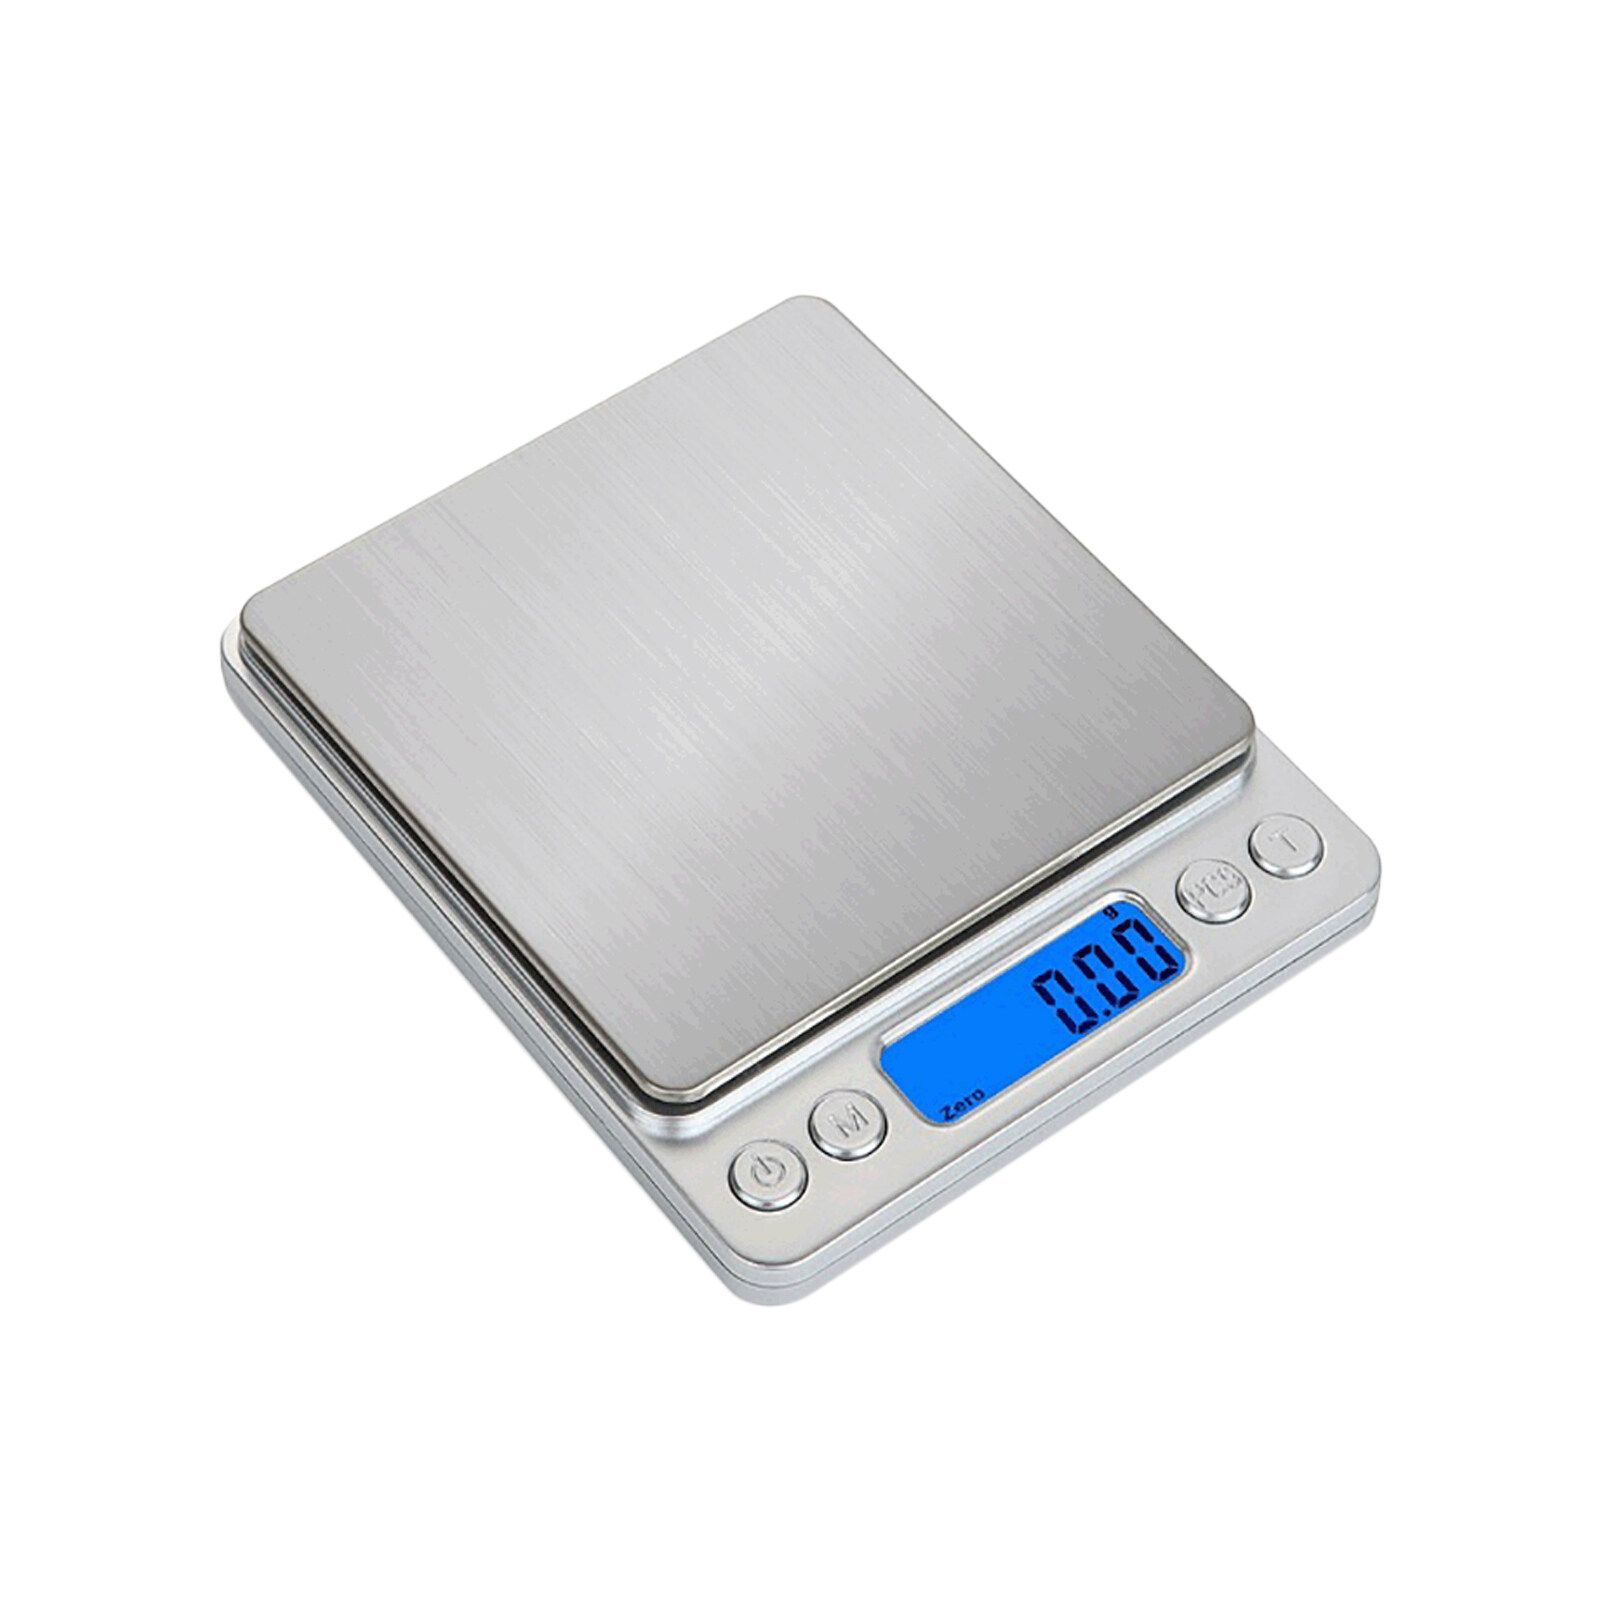 Digital Scale весы 500г. Superior Mini Digital platform Scale i-2000. Электронные весы 0.1-500гр. Мини весы электронные карманные 0.1-500 гр. Купить мини весы